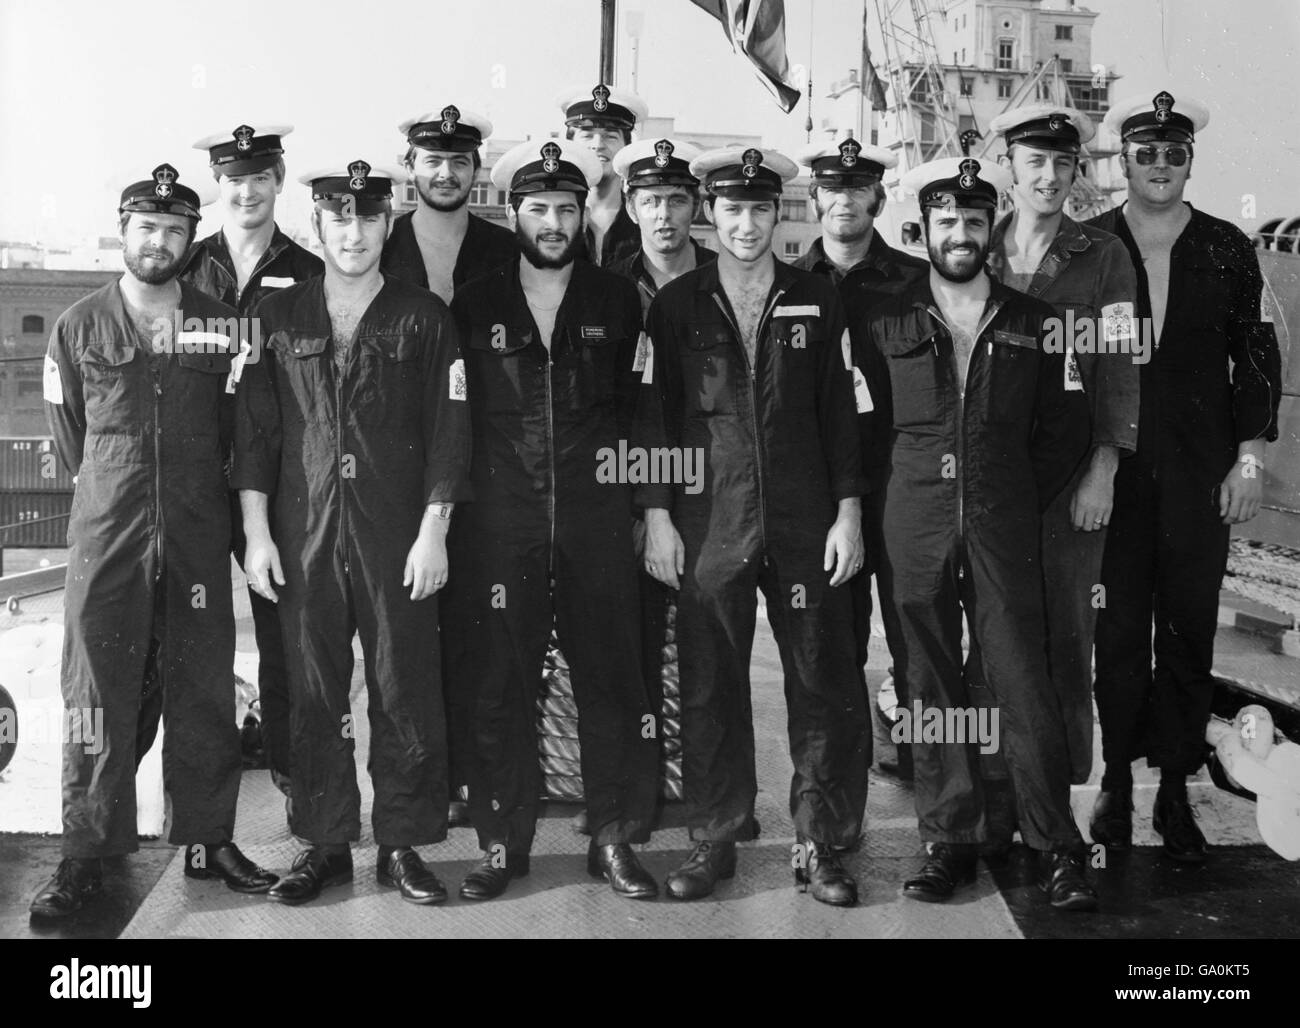 Sammeln Sie das Bild des ehemaligen Ingenieurs der Royal Navy Derek 'Smokey' Cole (erste Reihe 4 von links) an Bord der HMS Intrepid im Jahr 1981. Herr Cole diente an Bord des Sturmschiffs während des Falklandkrieges vor 25 Jahren. Stockfoto